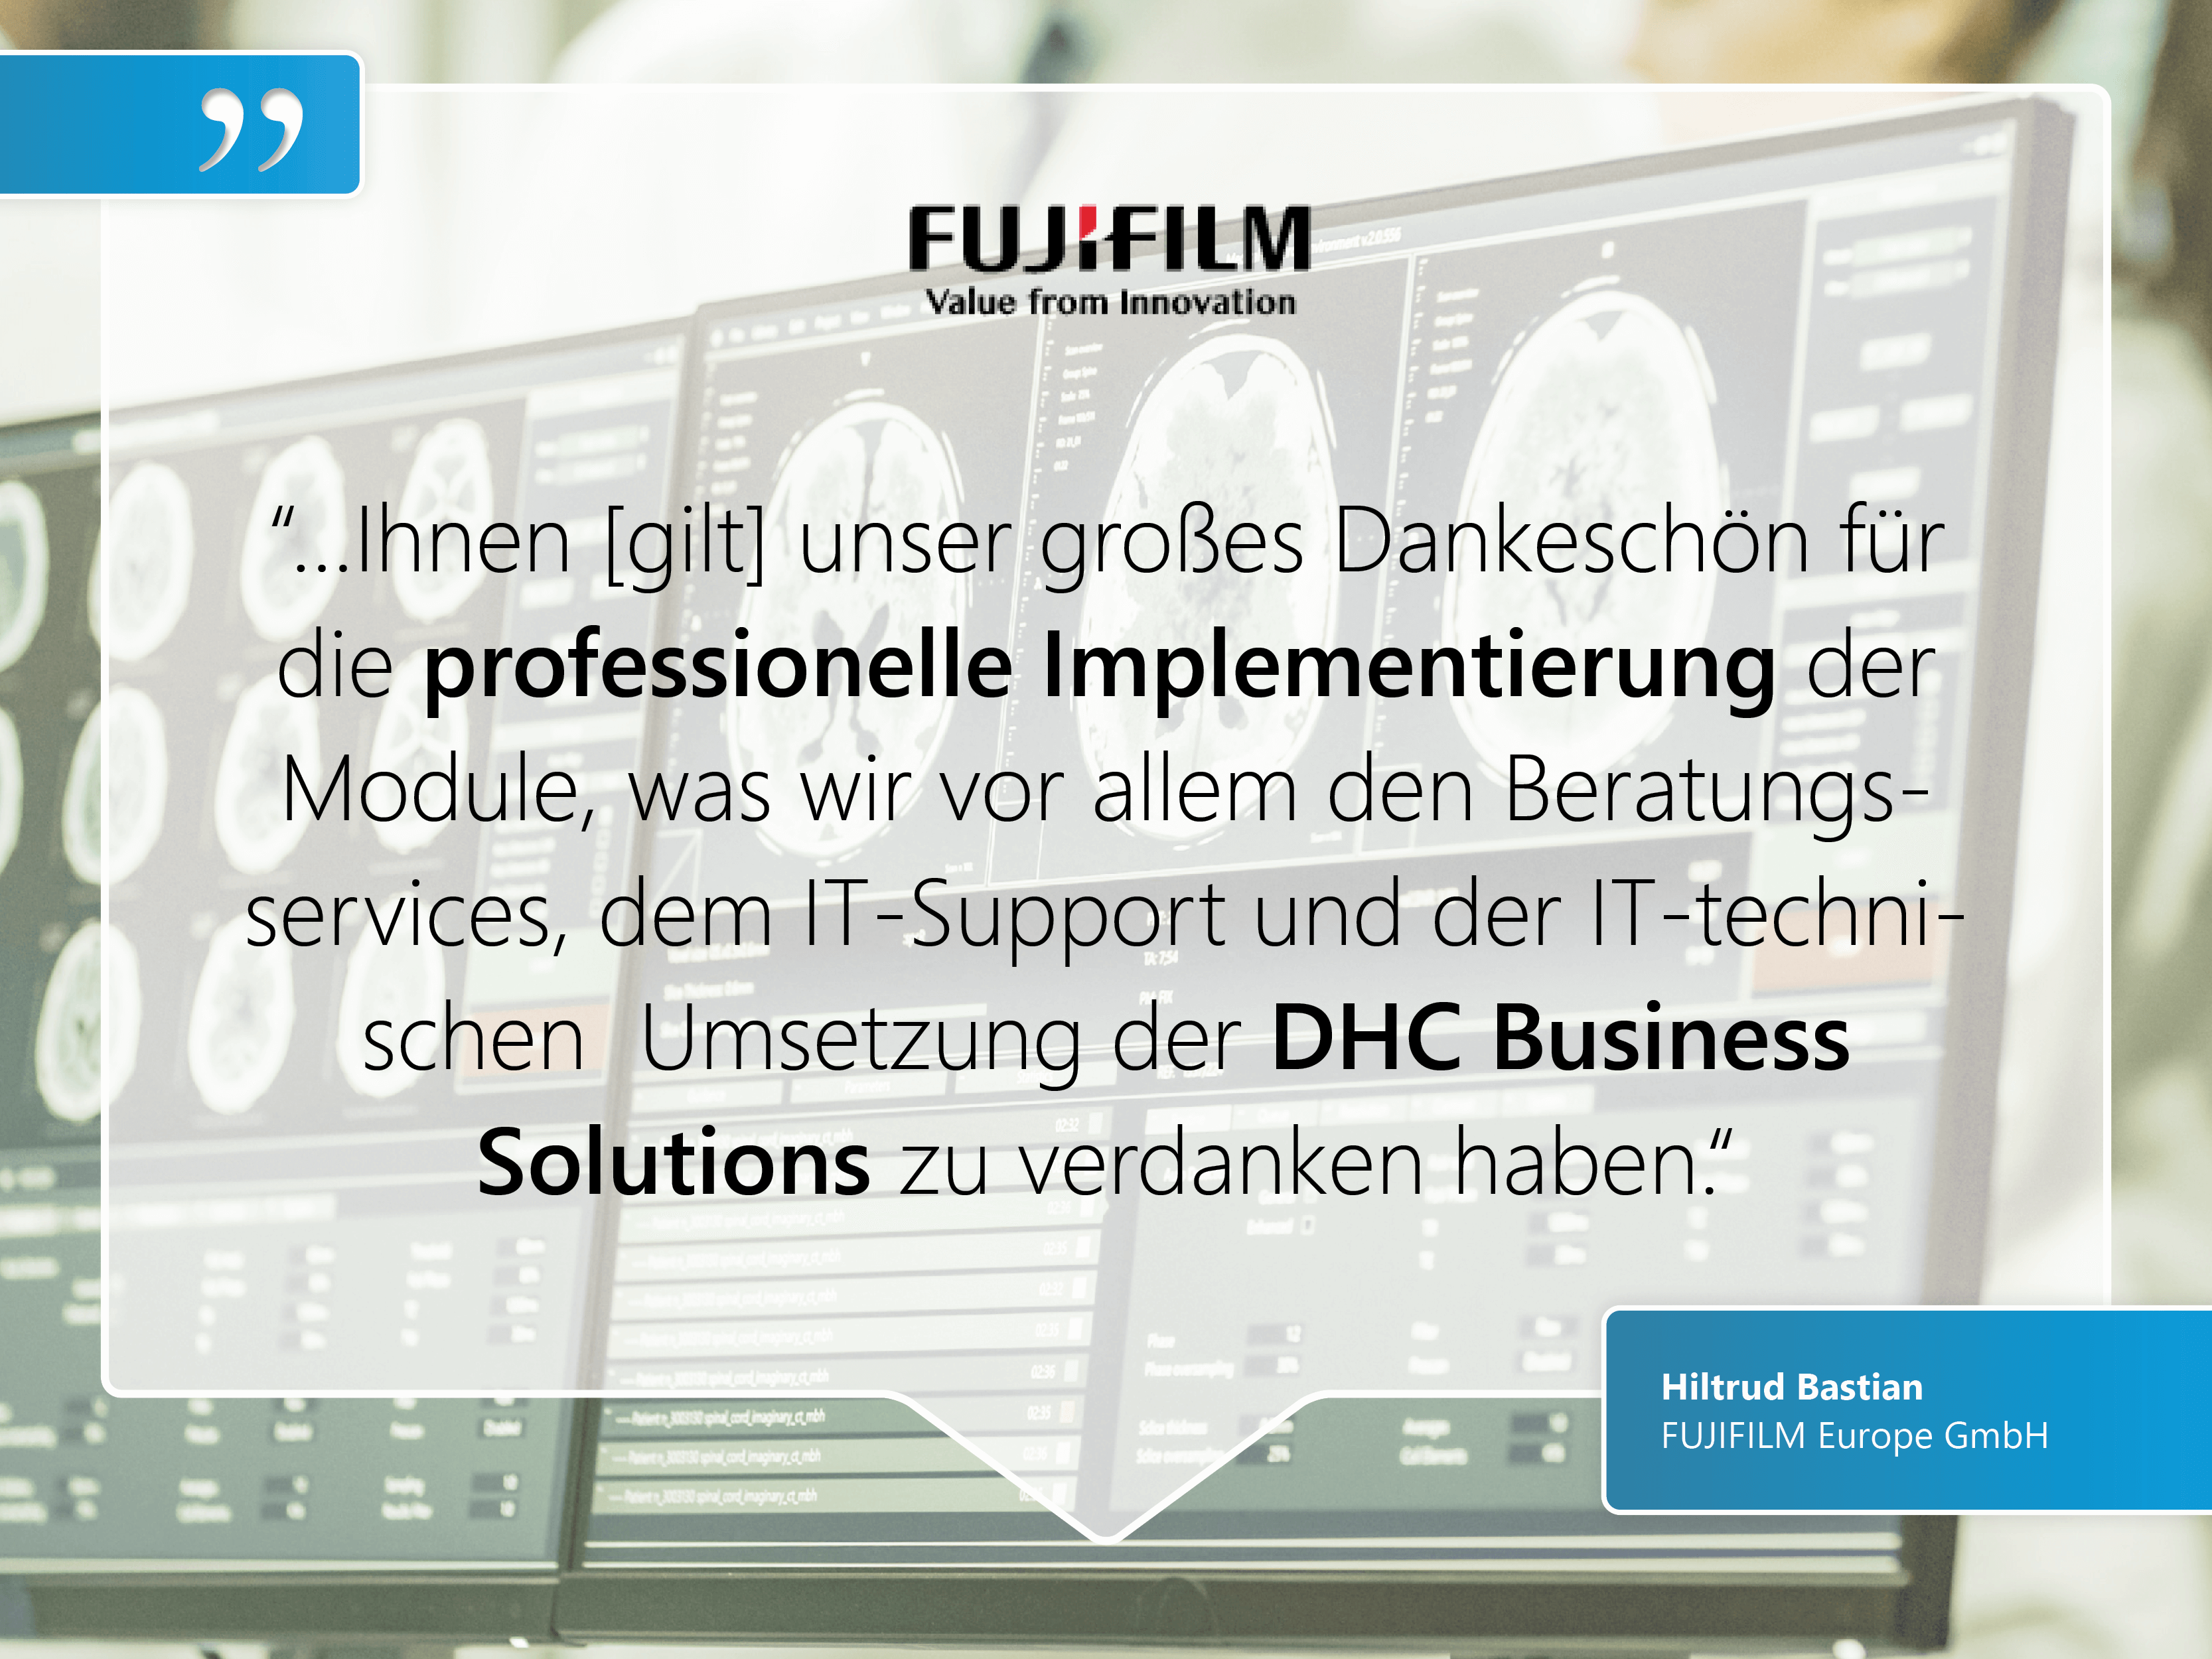 FUJIFILM Europe GmbH: “…Ihnen [gilt] unser großes Dankeschön für die professionelle Implementierung der Module, was wir vor allem den Beratungsservices, dem IT-Support und der IT-technischen  Umsetzung der DHC Business  Solutions zu verdanken haben.“